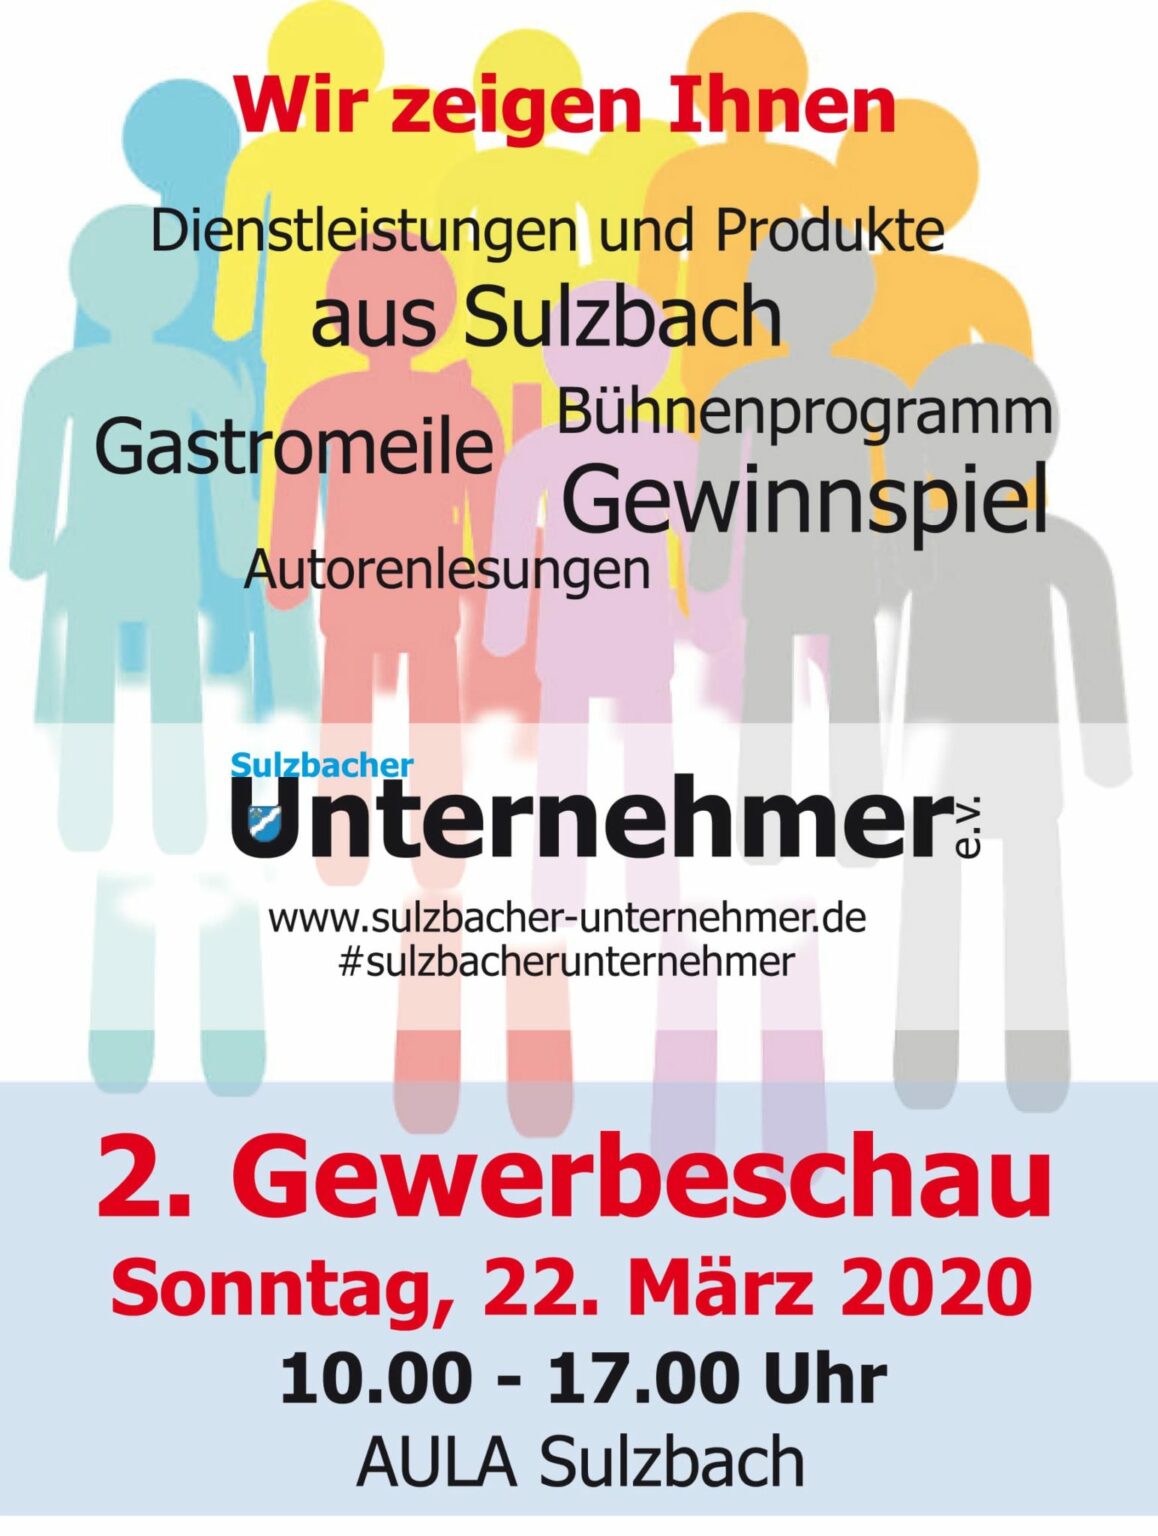 Sulzbach Gewerbeschau 2020